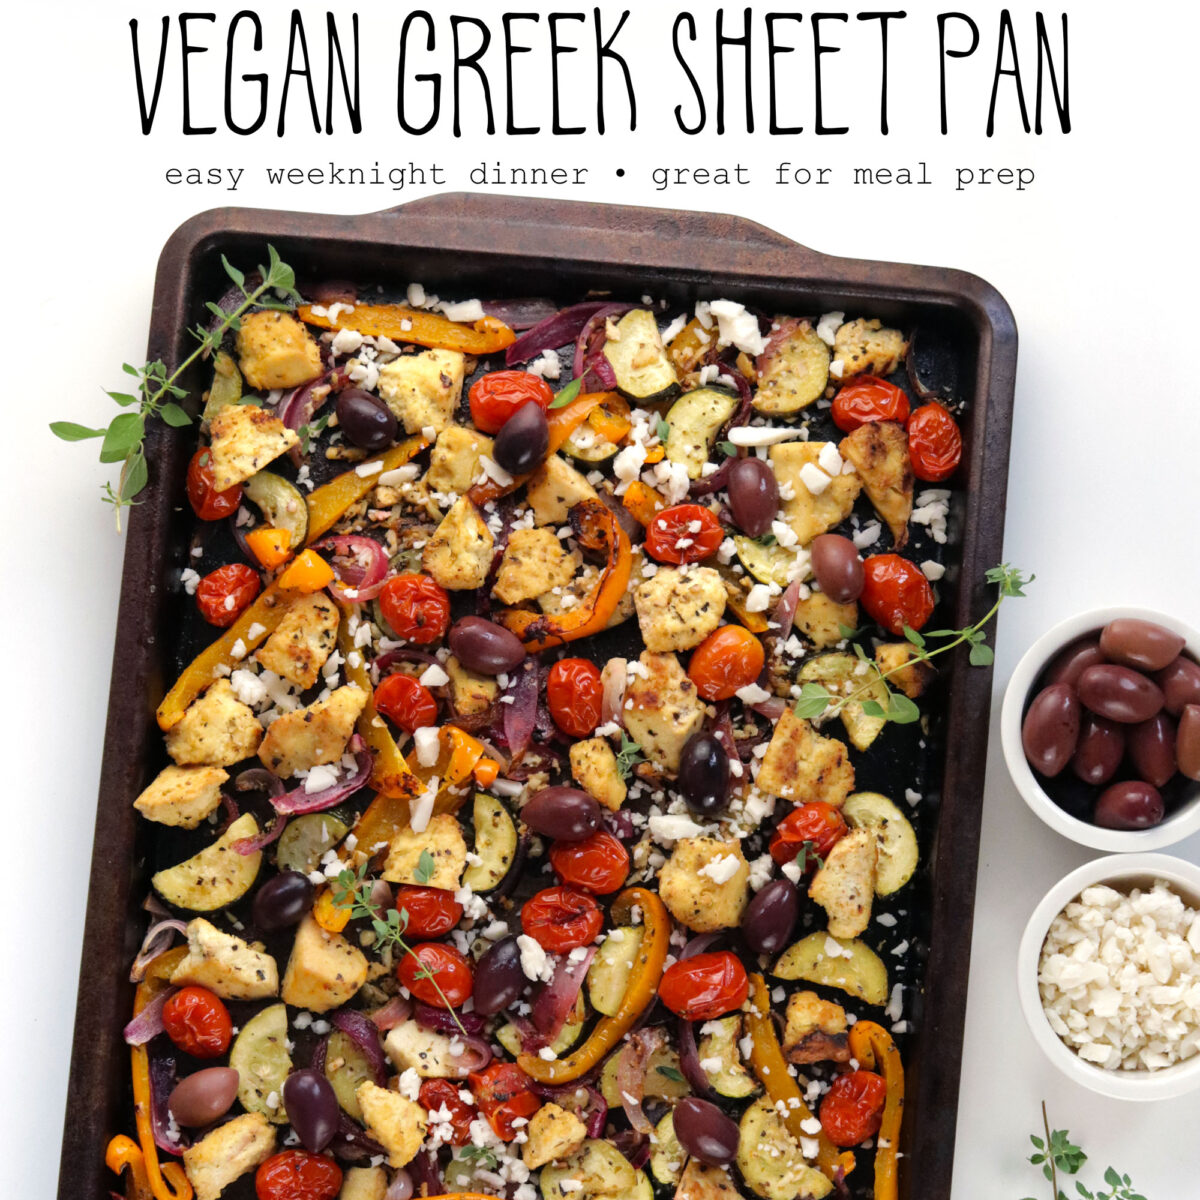 Vegan Greek Sheet Pan